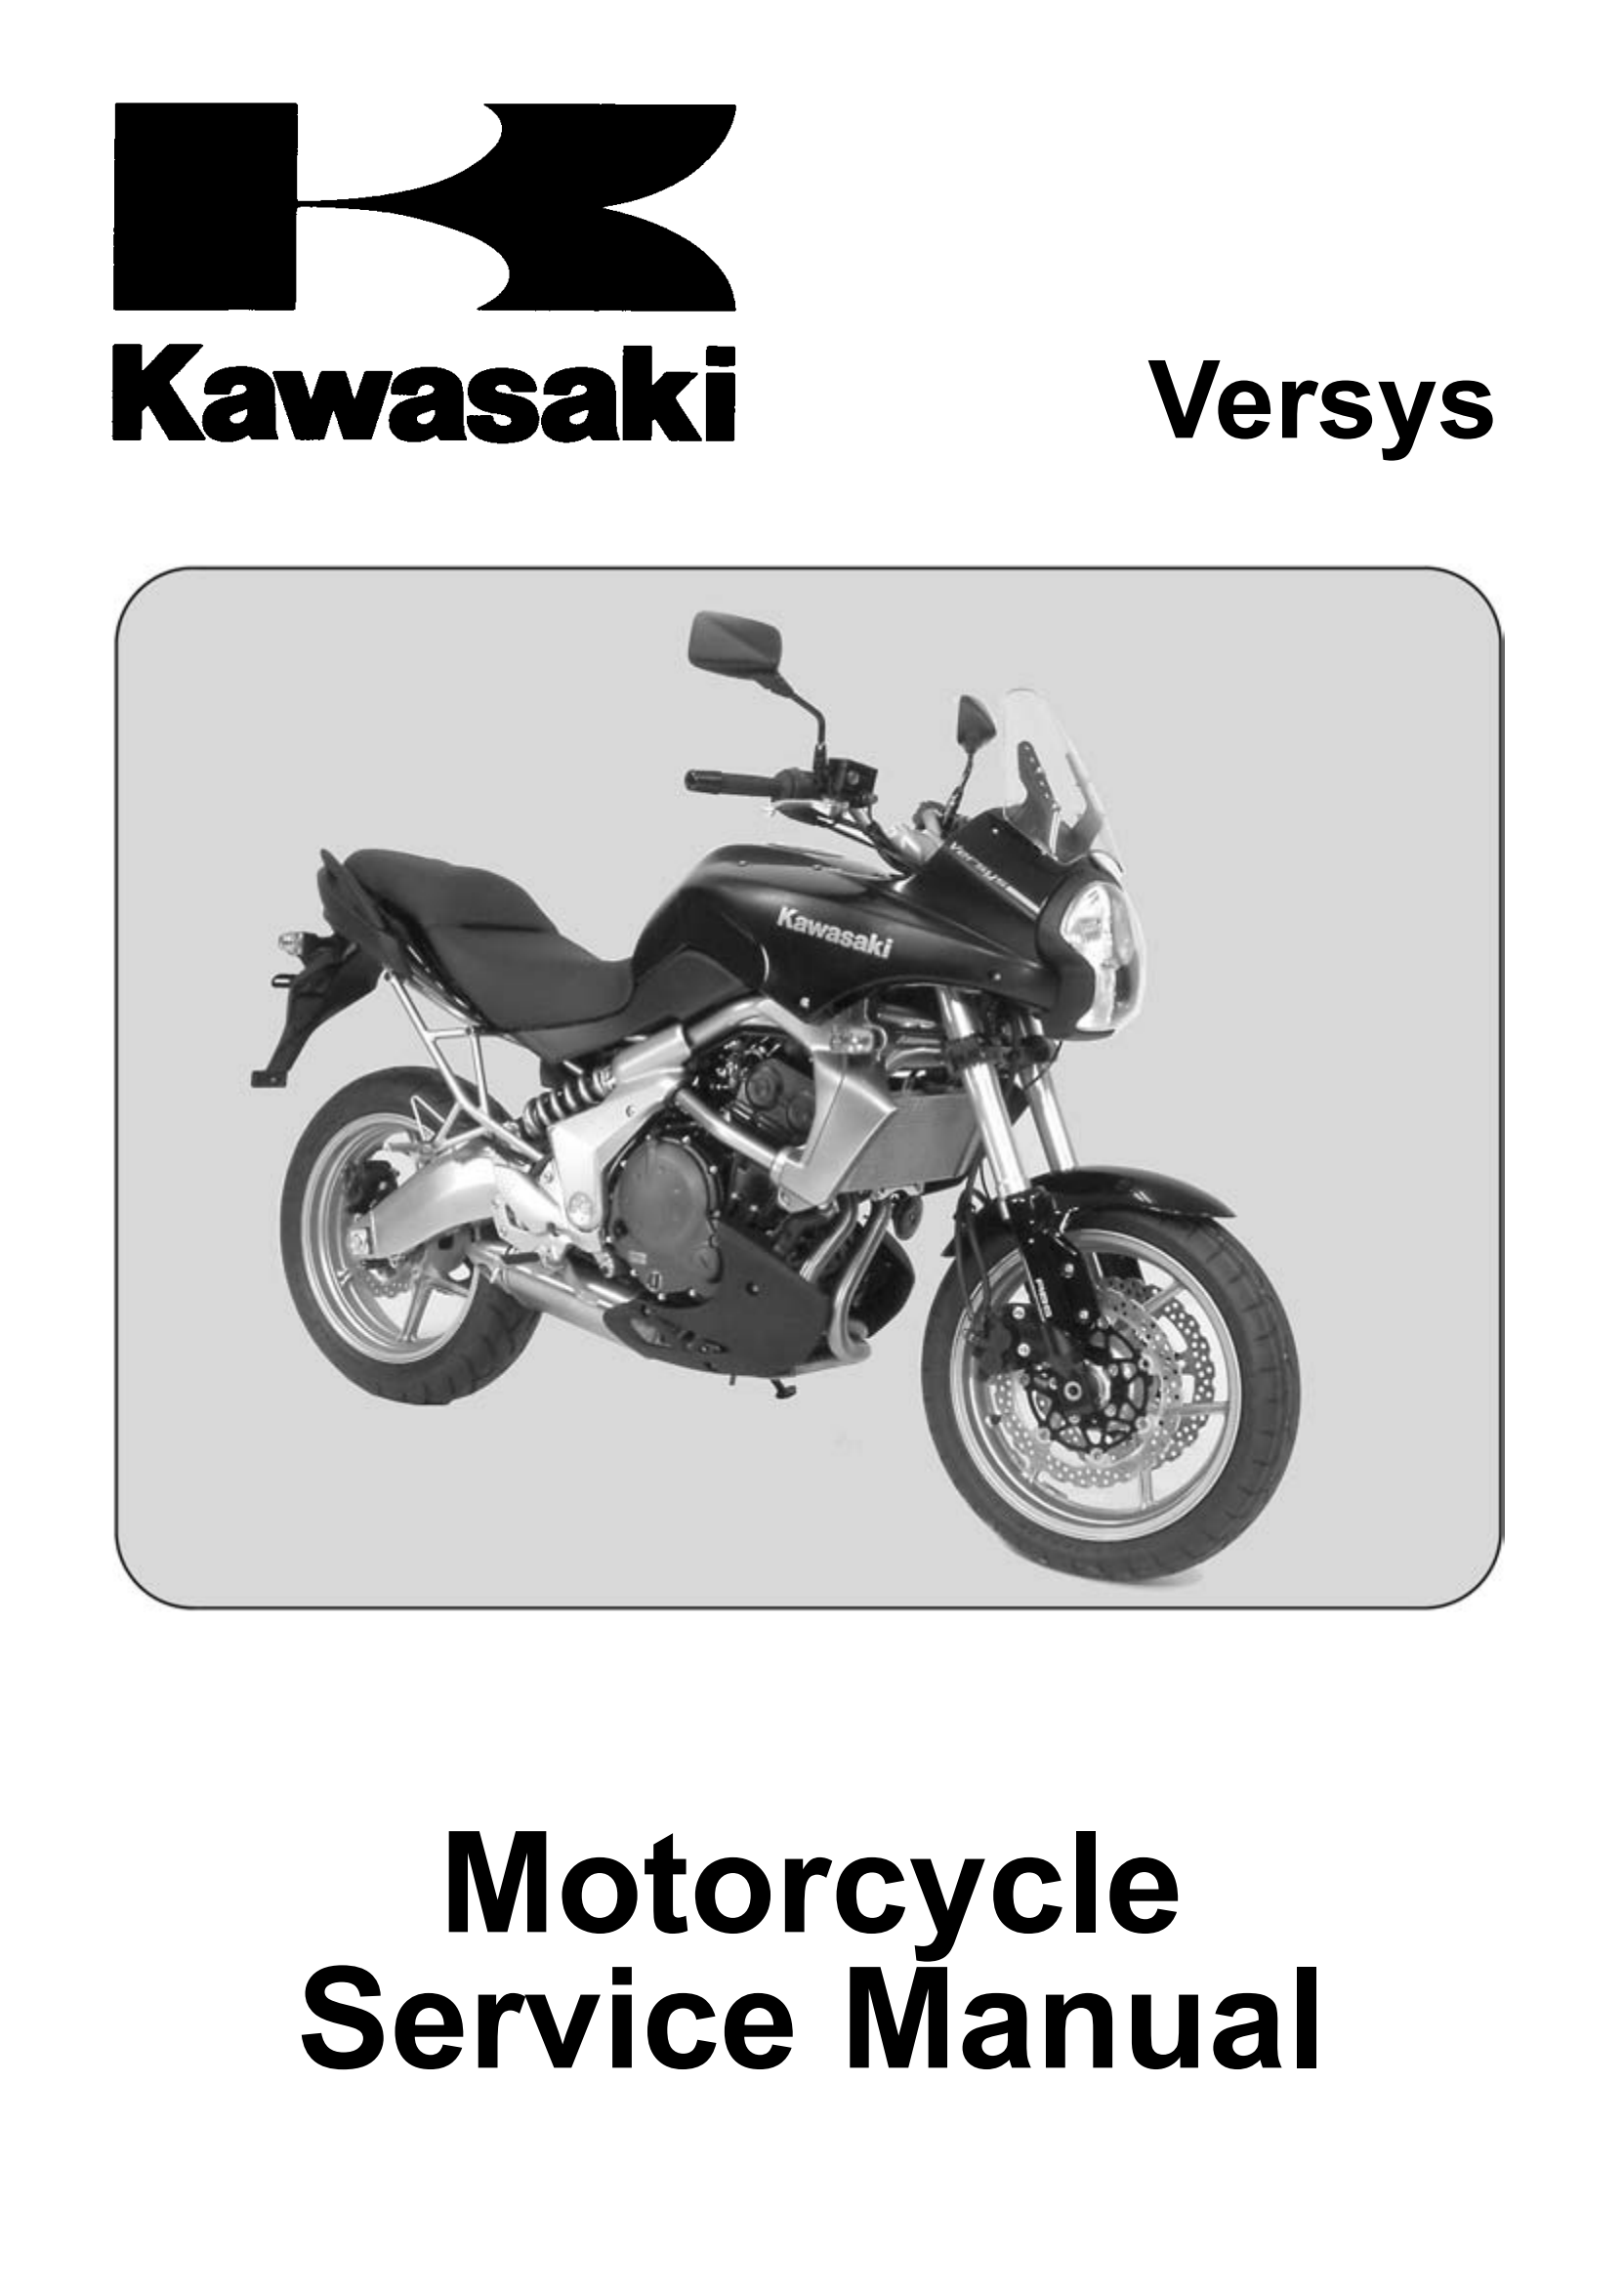 原版英文2007-2009年川崎异兽650 kawasaki versys 650维修手册插图